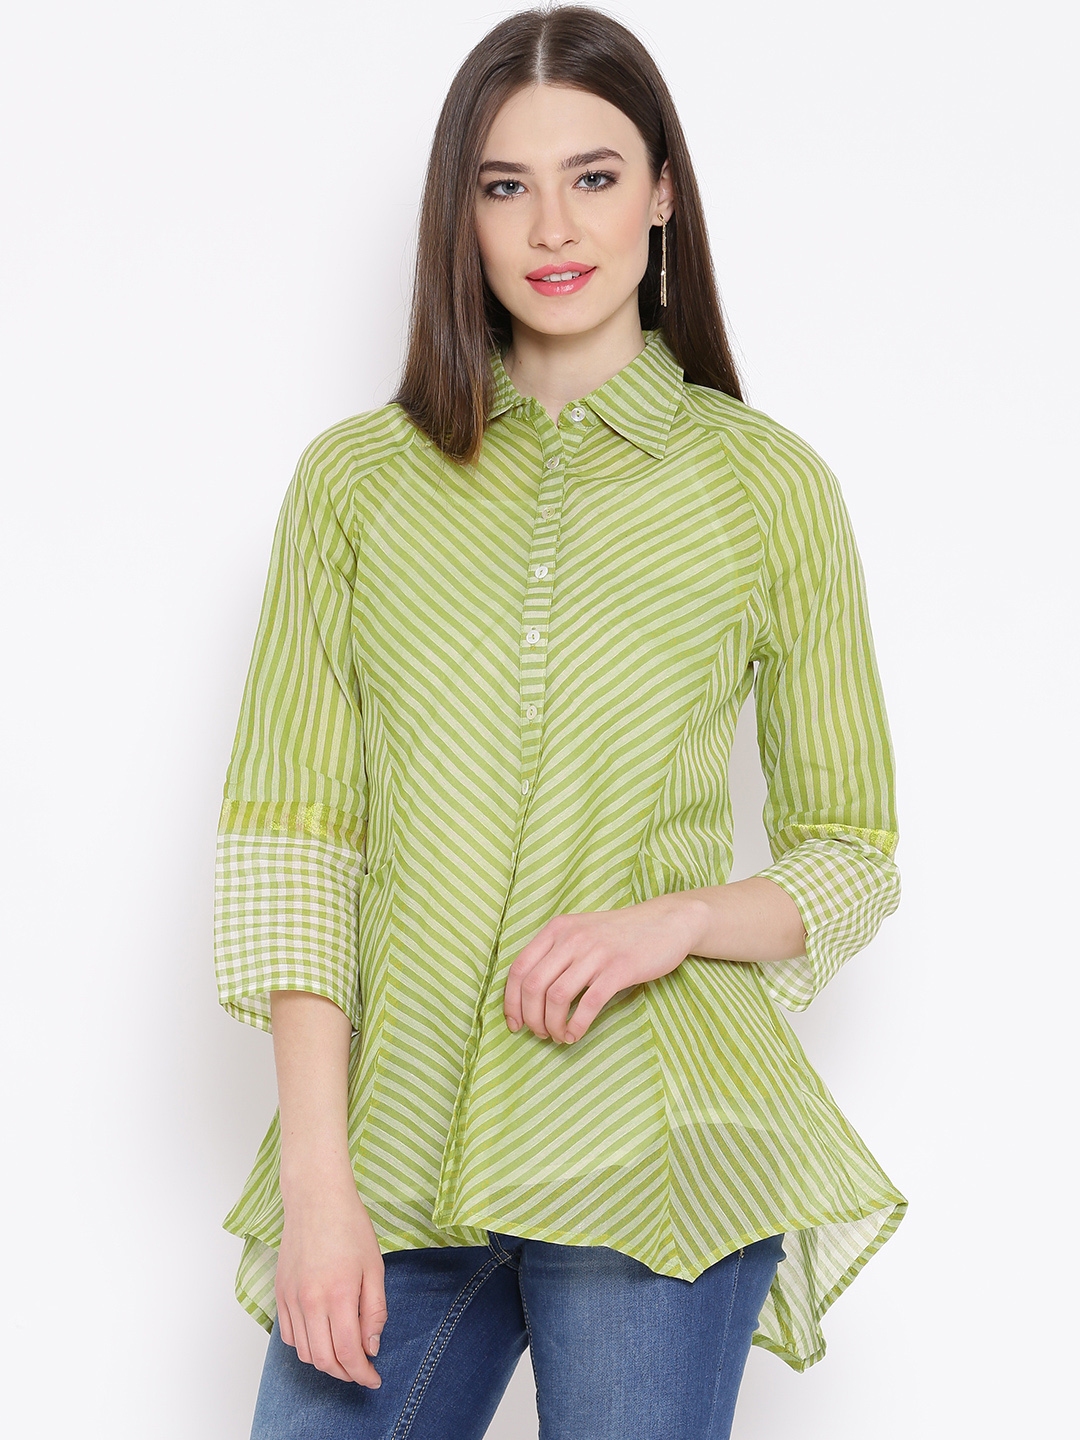 Buy BIBA Green Striped Tunic Shirt - Shirts for Women 1197853 | Myntra